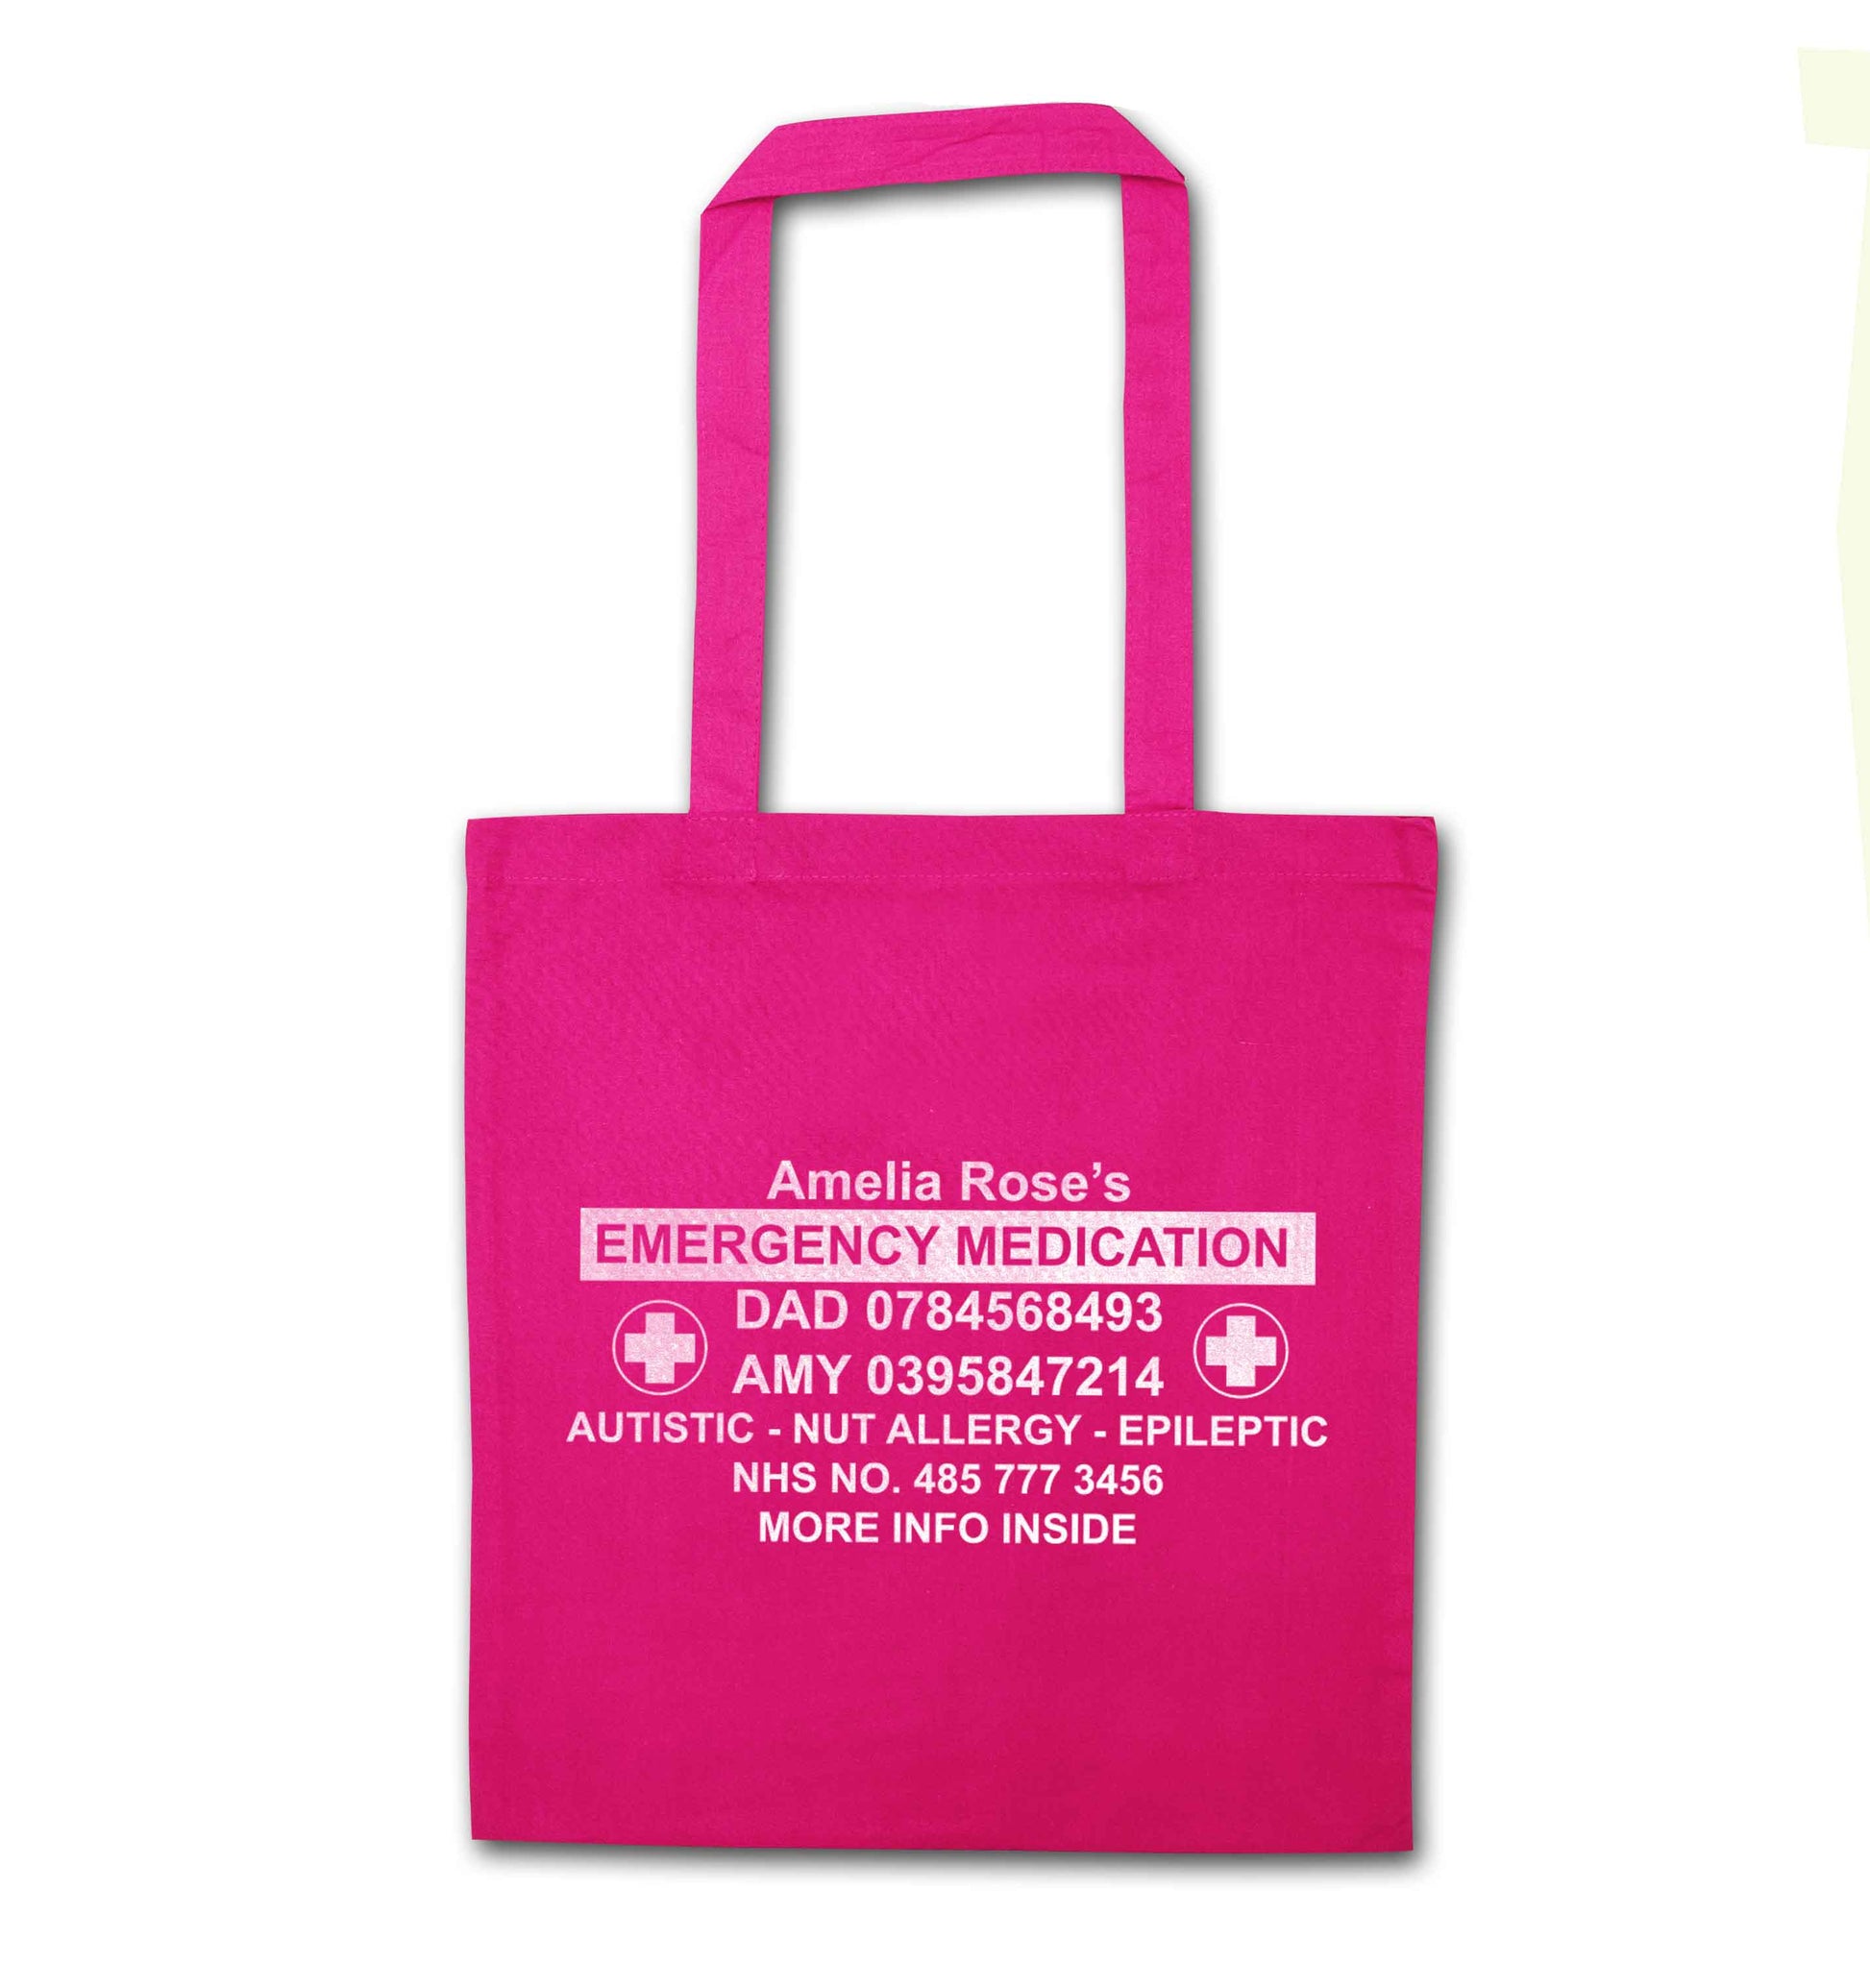 Personalised emergency medication bag pink tote bag